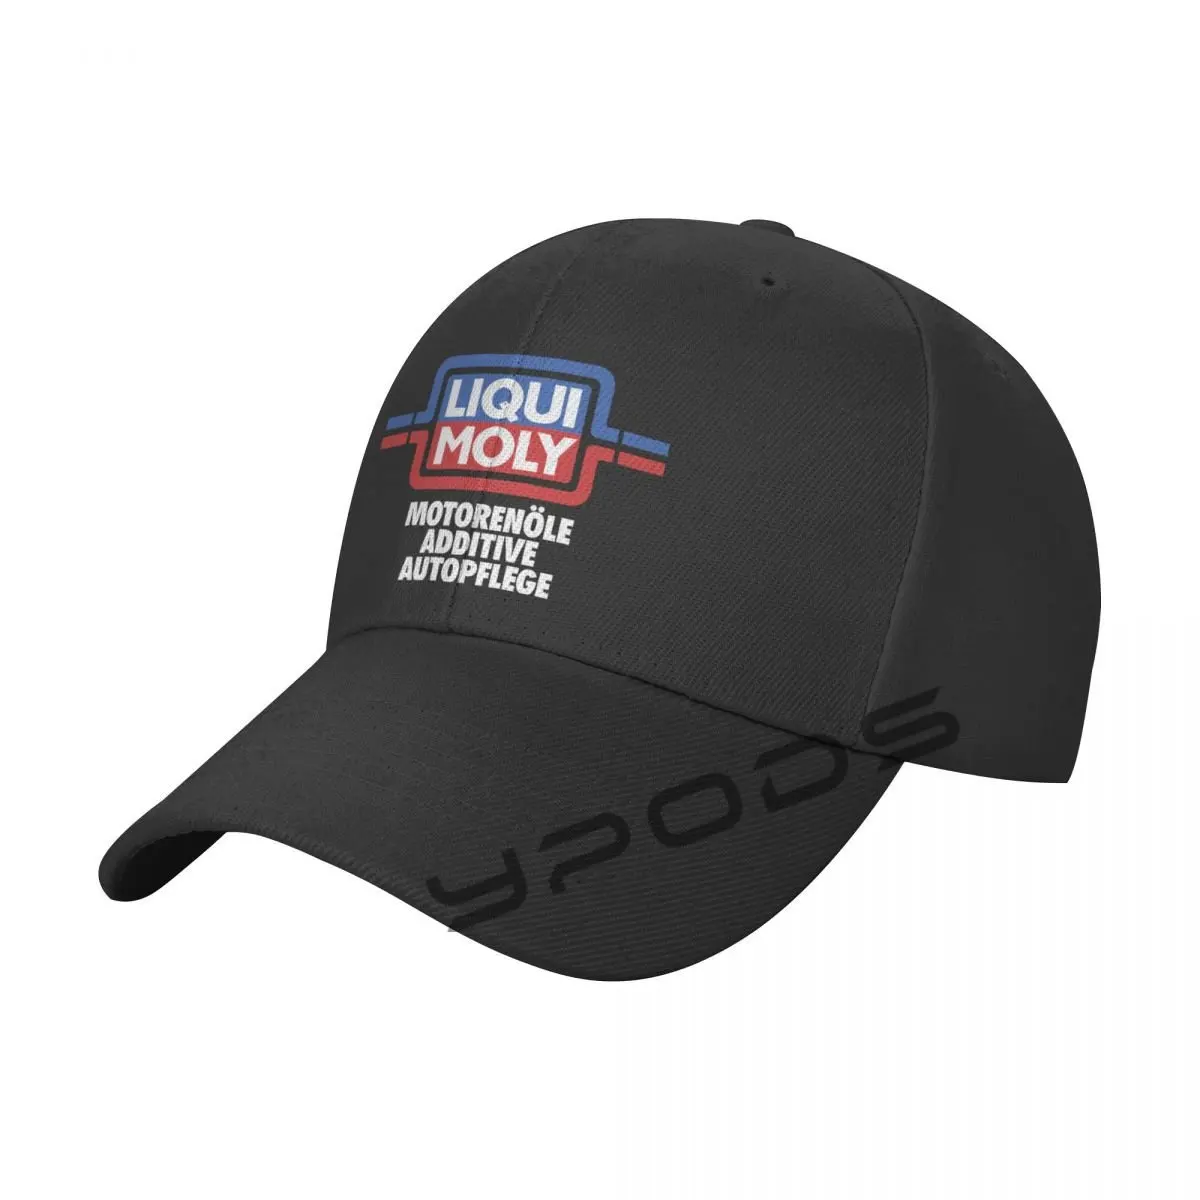 

Liqui Moly 2003 Logo Solid Color Baseball Cap Snapback Caps Casquette Hats For Men Women